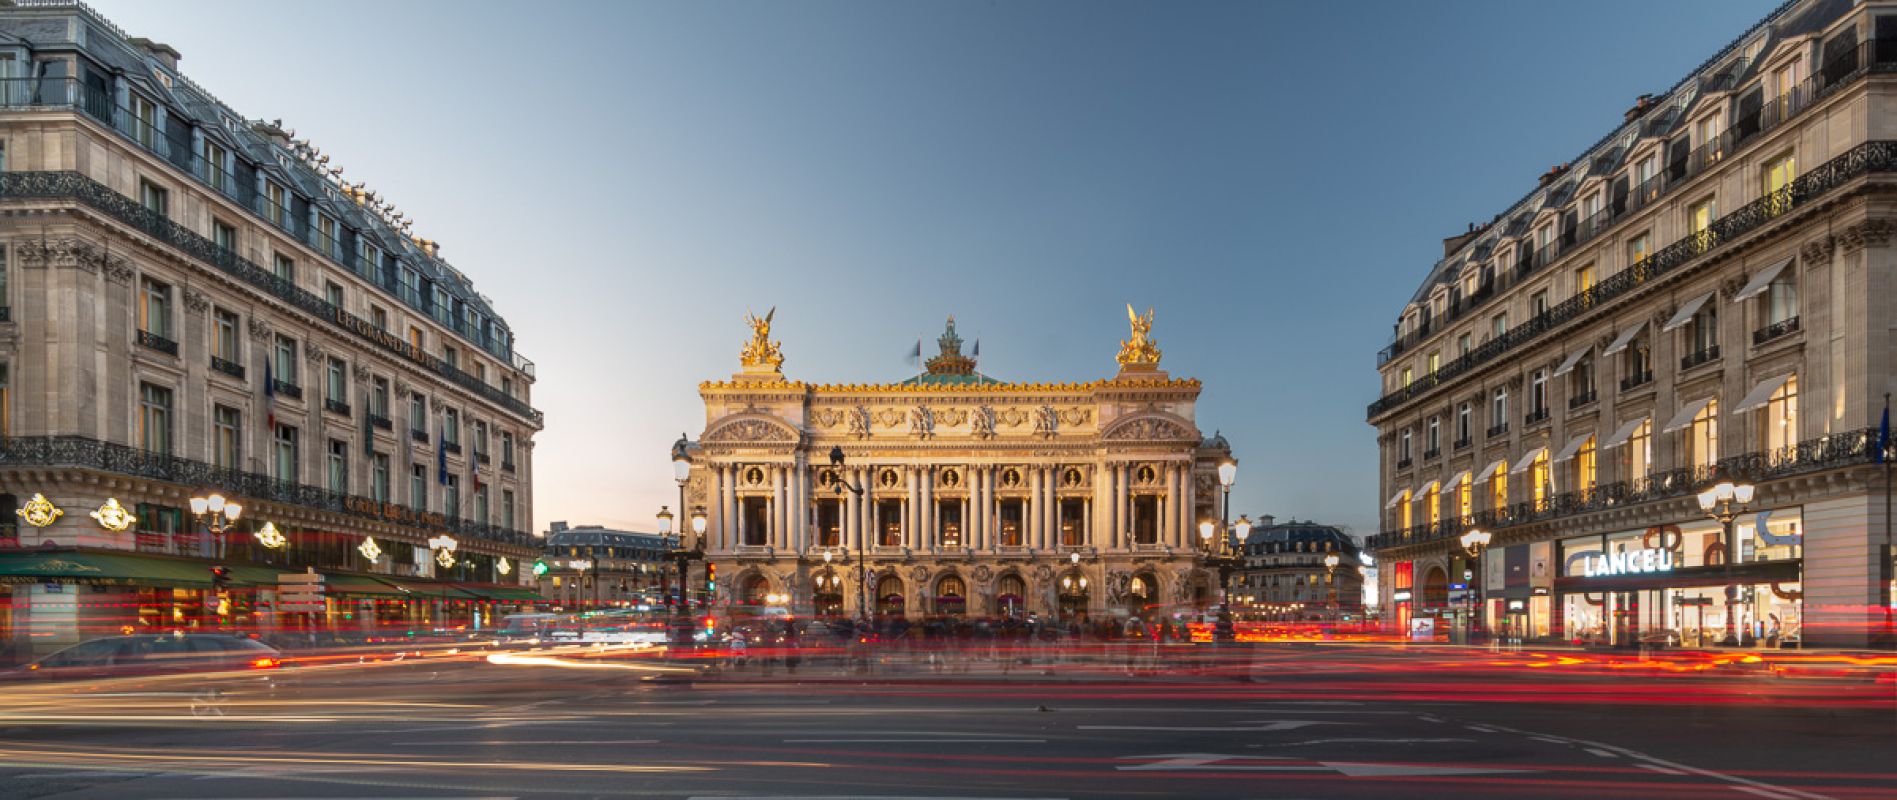 Opera Garnier a Paris a la tombee de la nuit Photo Sebastien Desnoulez photographe d ambiances et d architecture